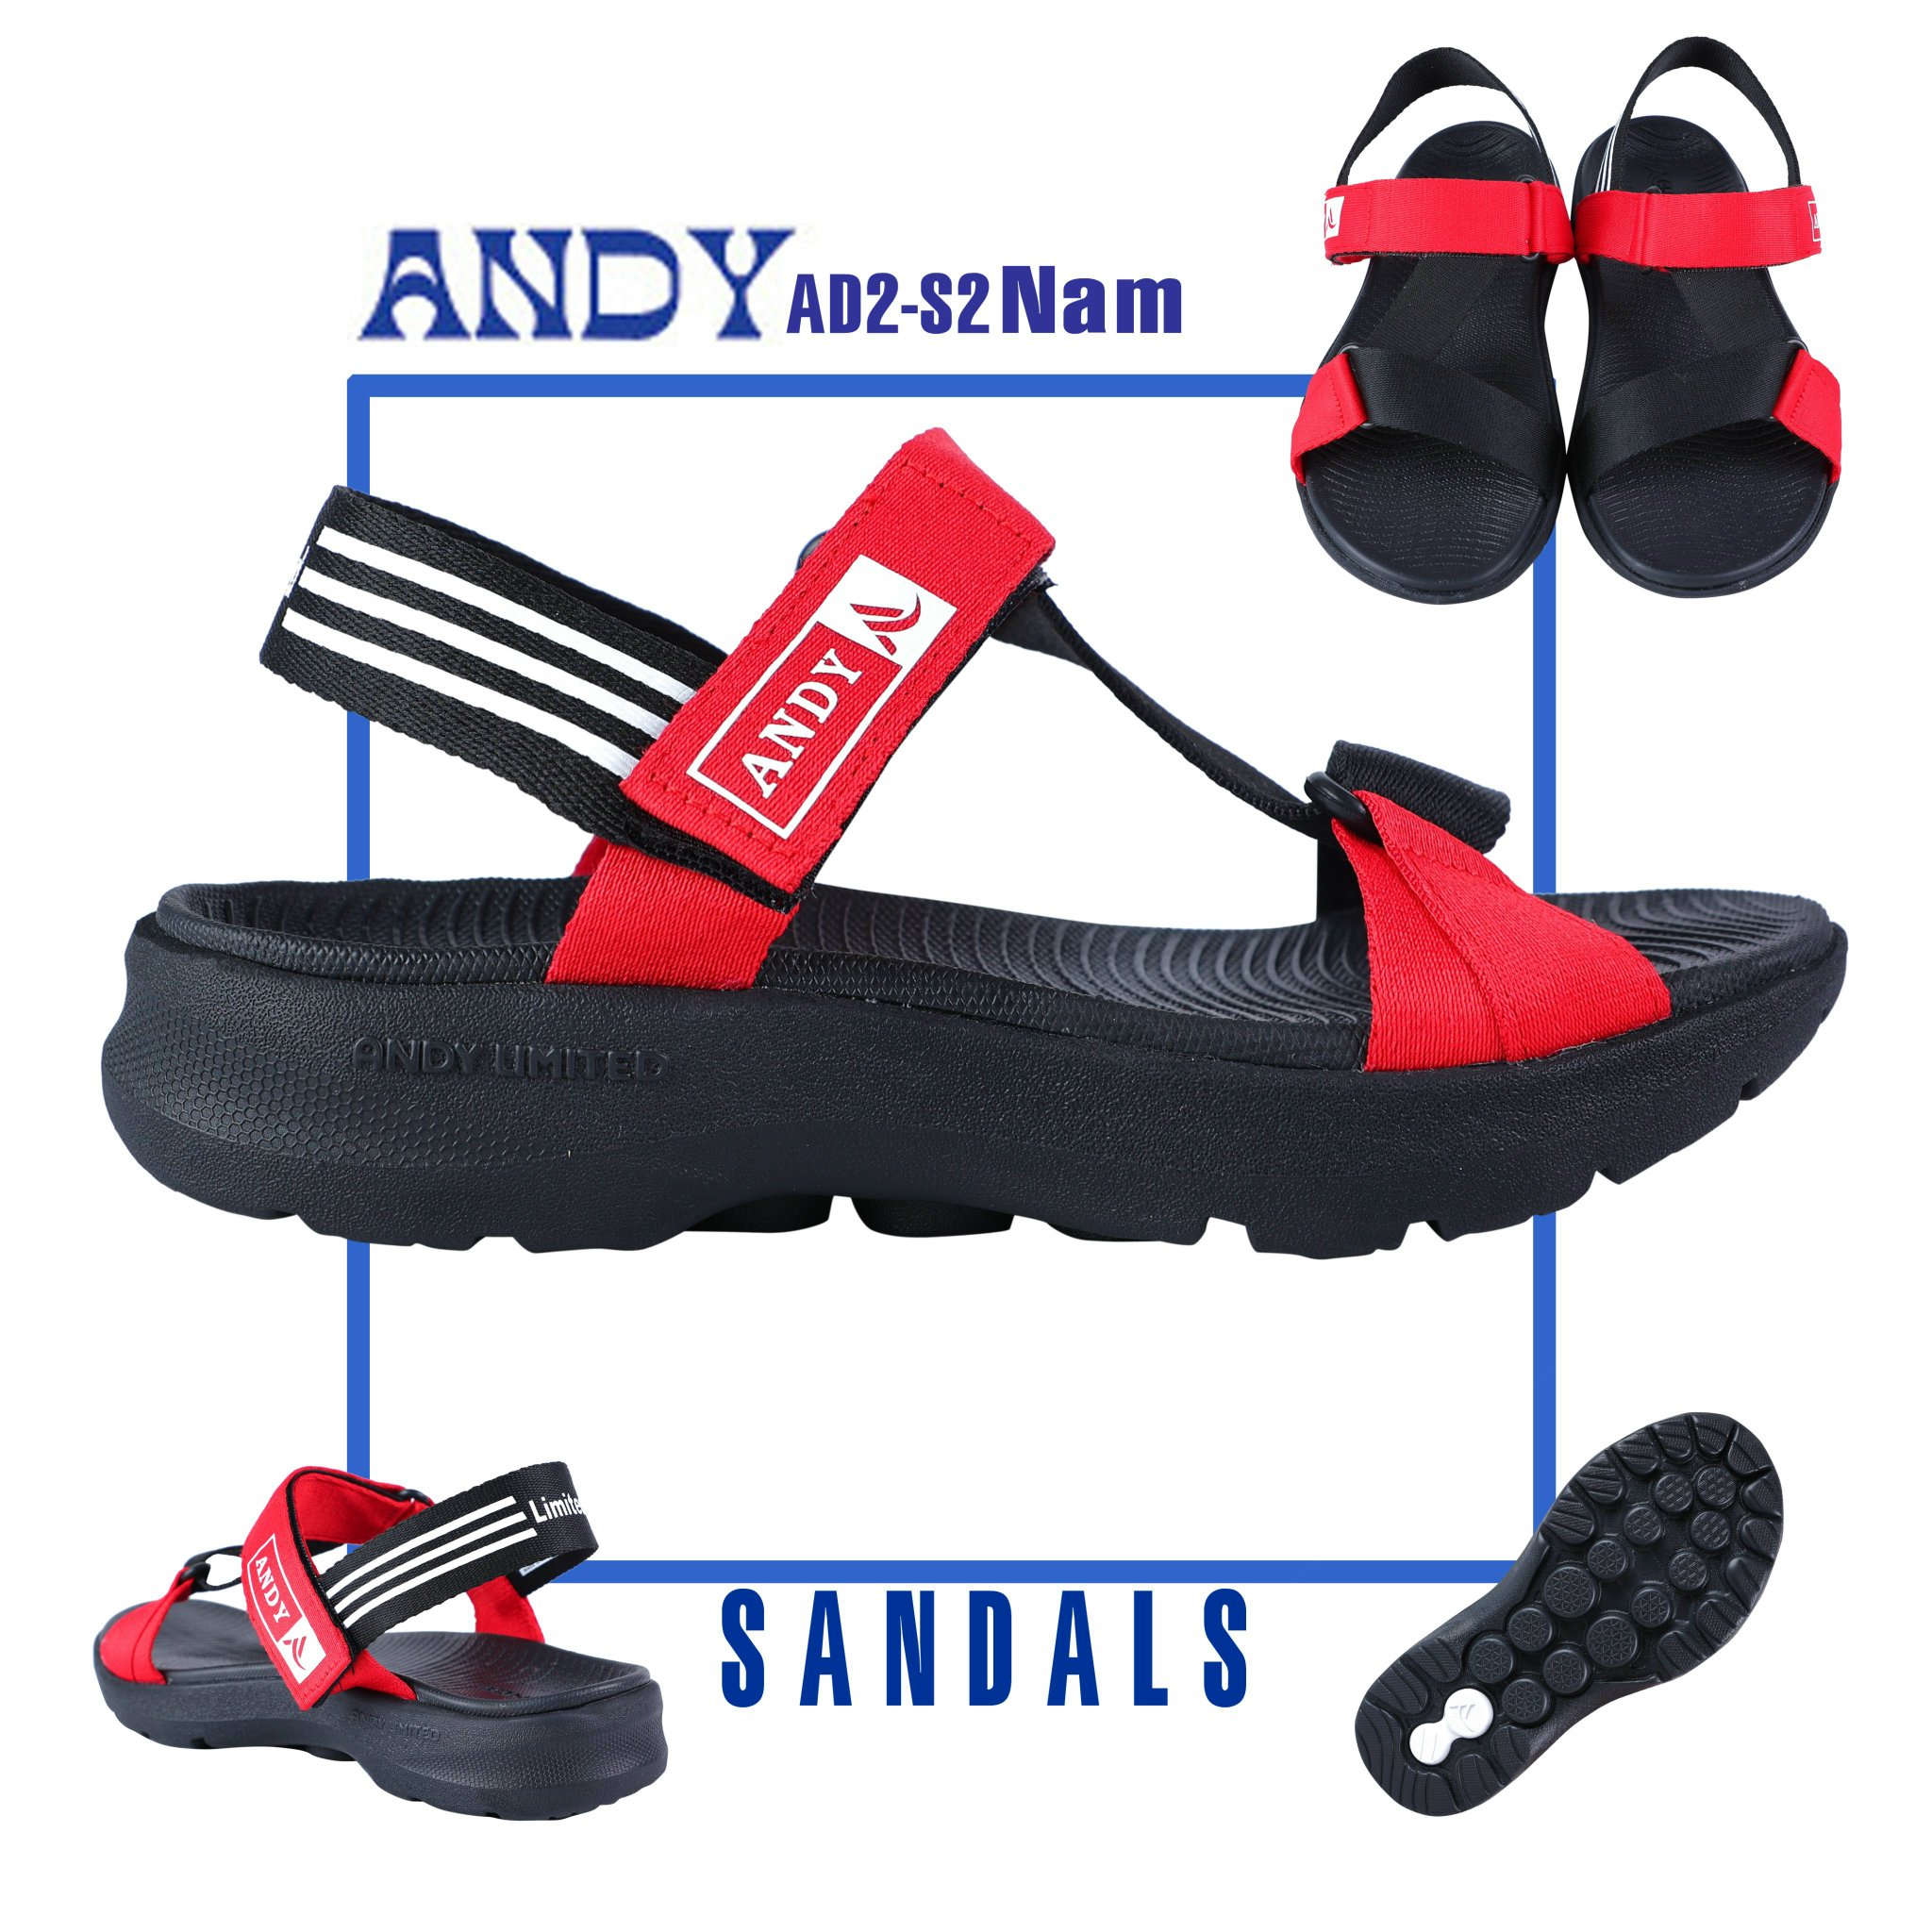 Andy Store - Chuyên giày dép thể thao cao cấp